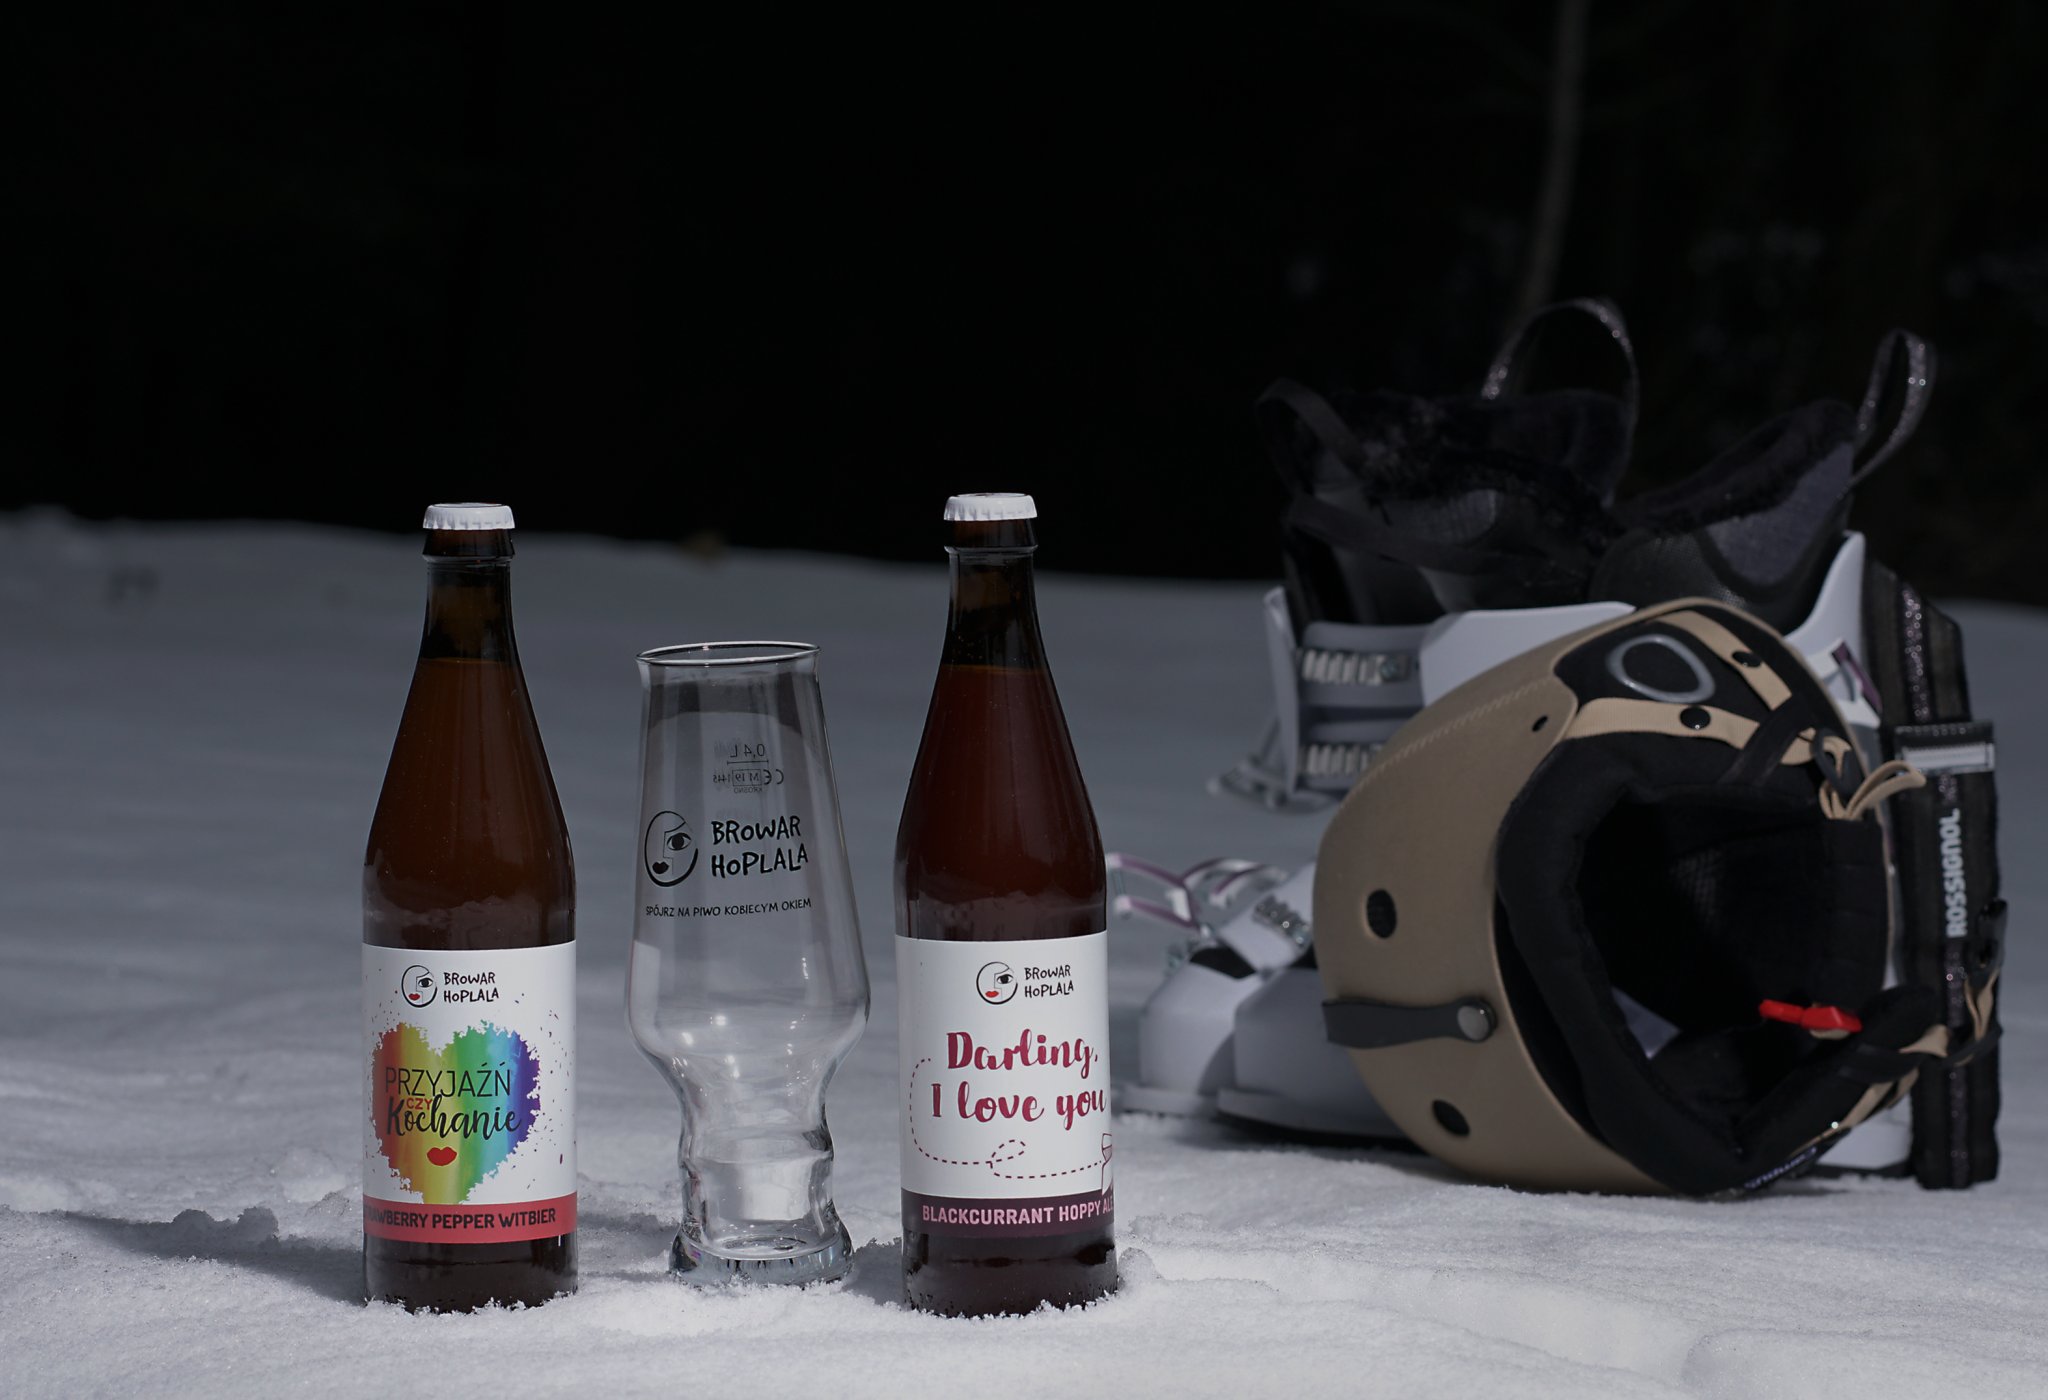 Dwie butelki piwa z hop lala - przyjaźń czy kochanie i Darling i Love you stojąće na śniegu w nocy. w tle buty narciarskie i kask narciarski